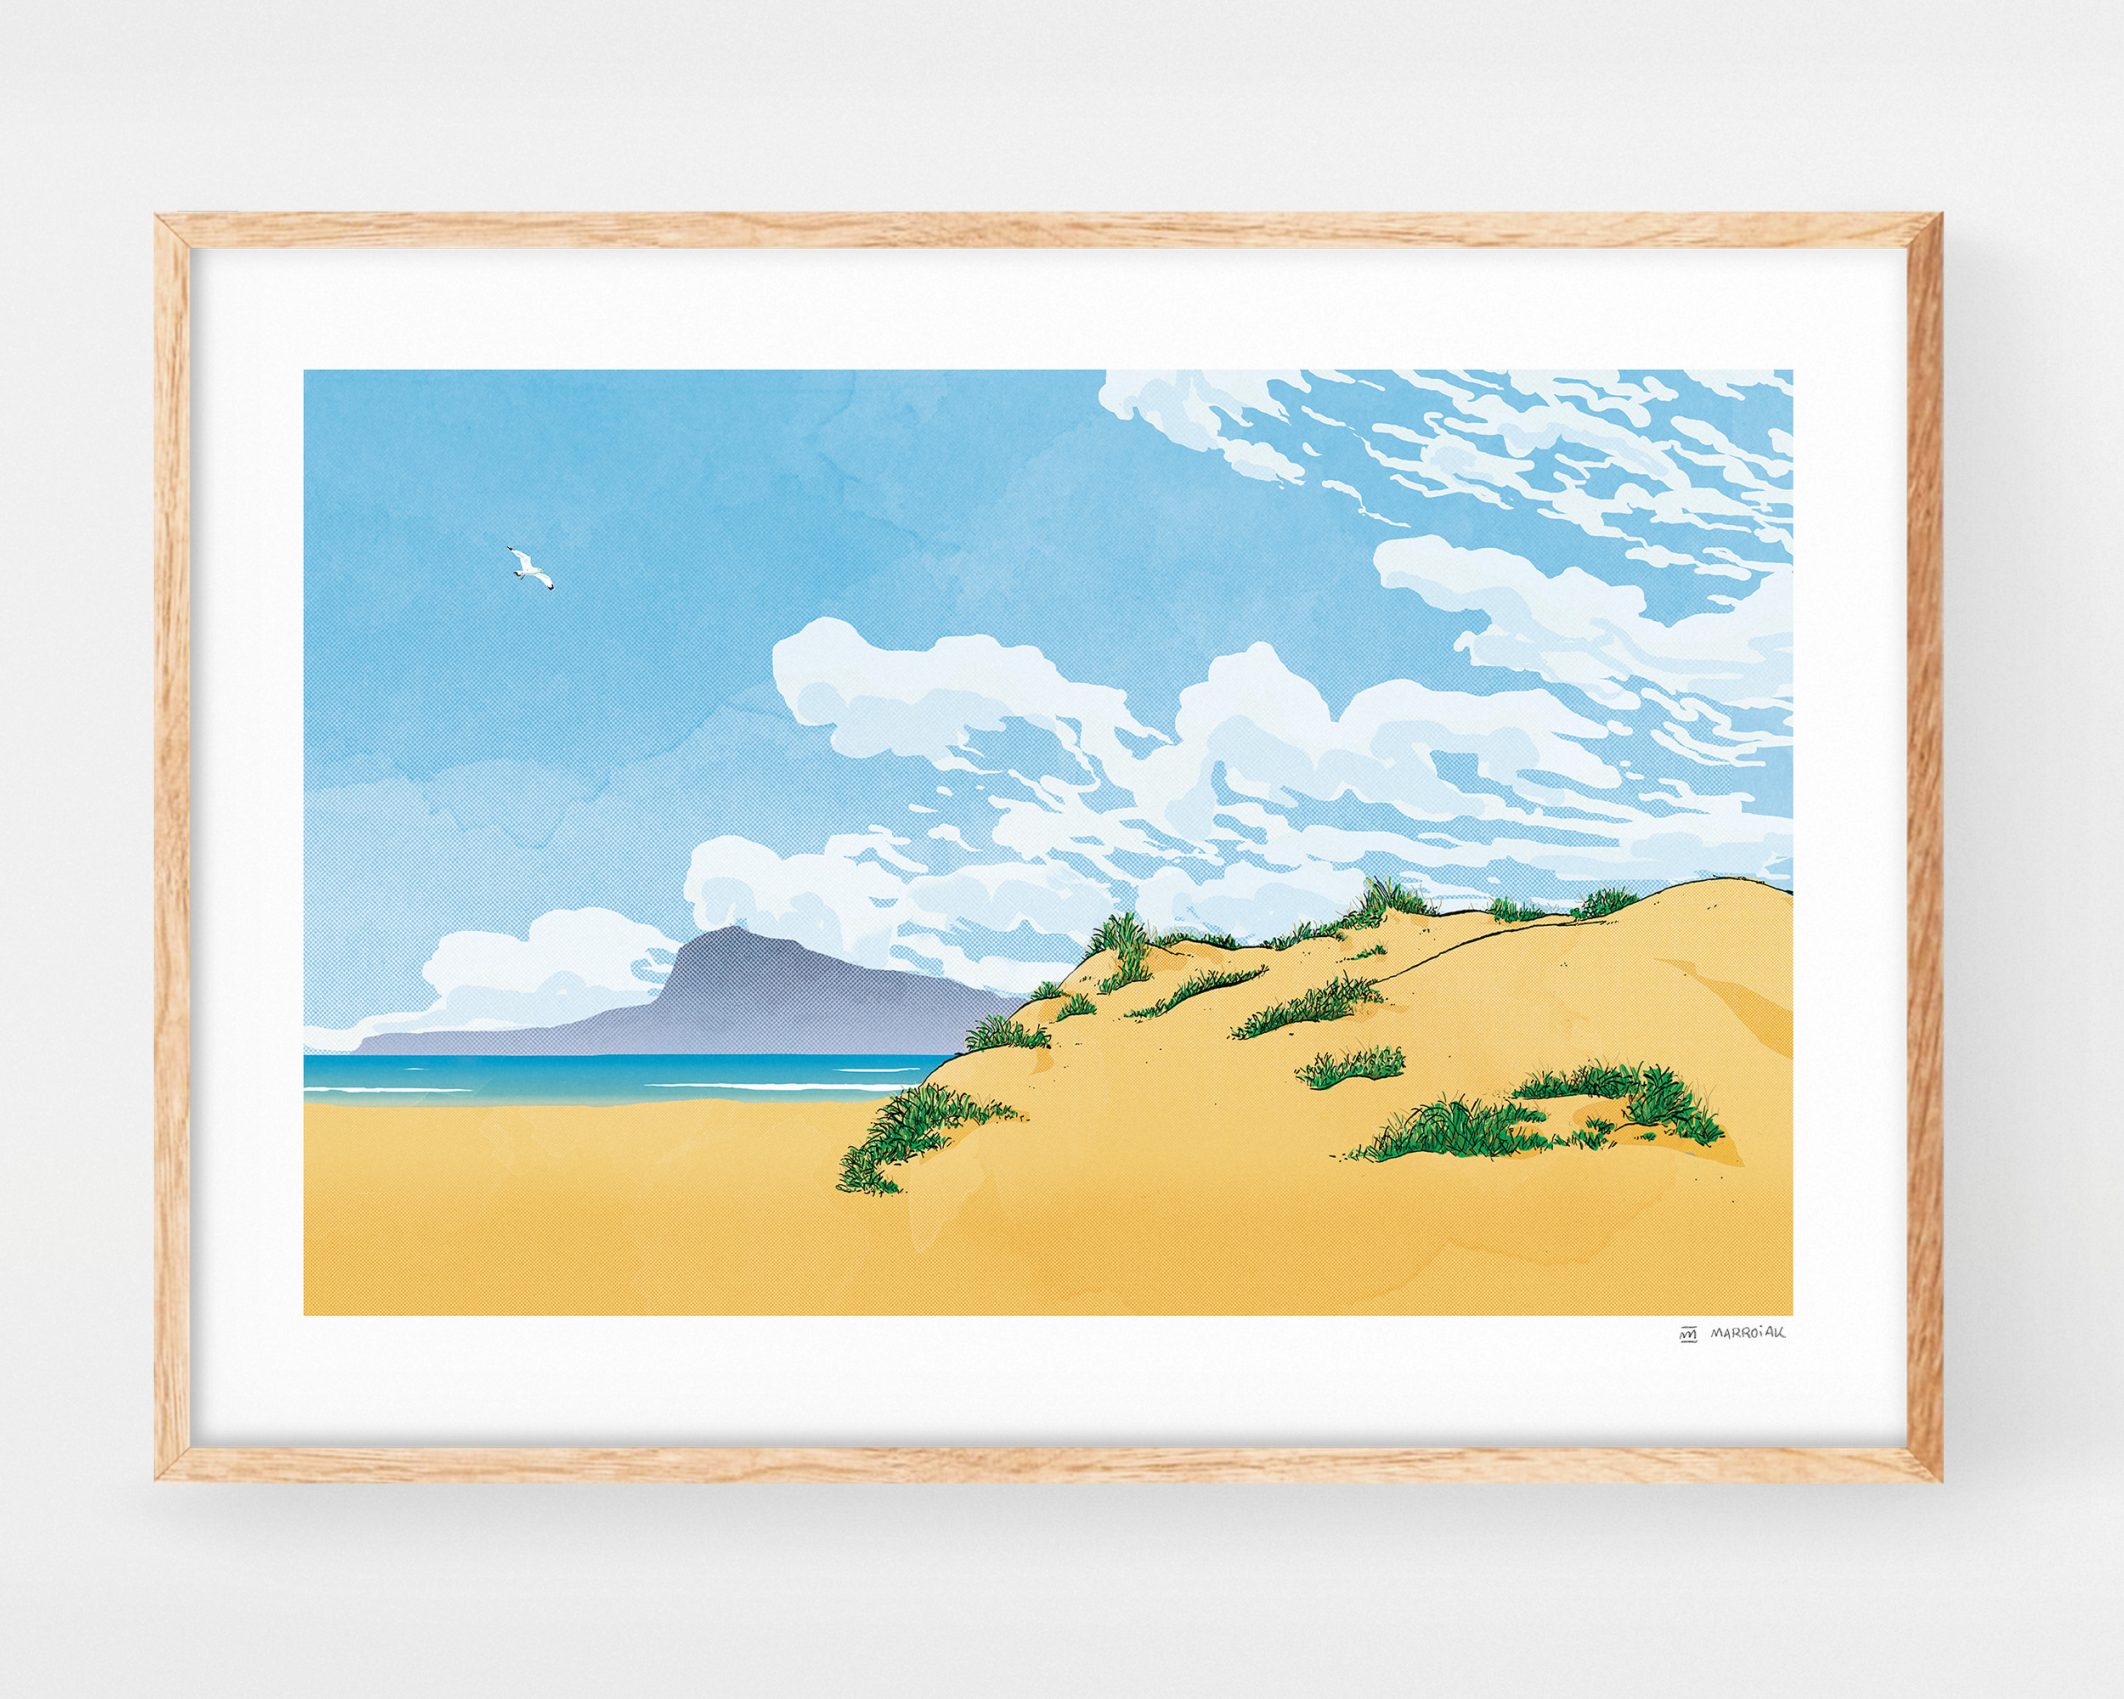 Cuadro para enmarcar con un dibujo de la playa de Oliva y la montaña Montgó de Denia y Jávea. Ilustraciones originales de la safor y Valencia basadas en fotos de paisajes meditarráneos.